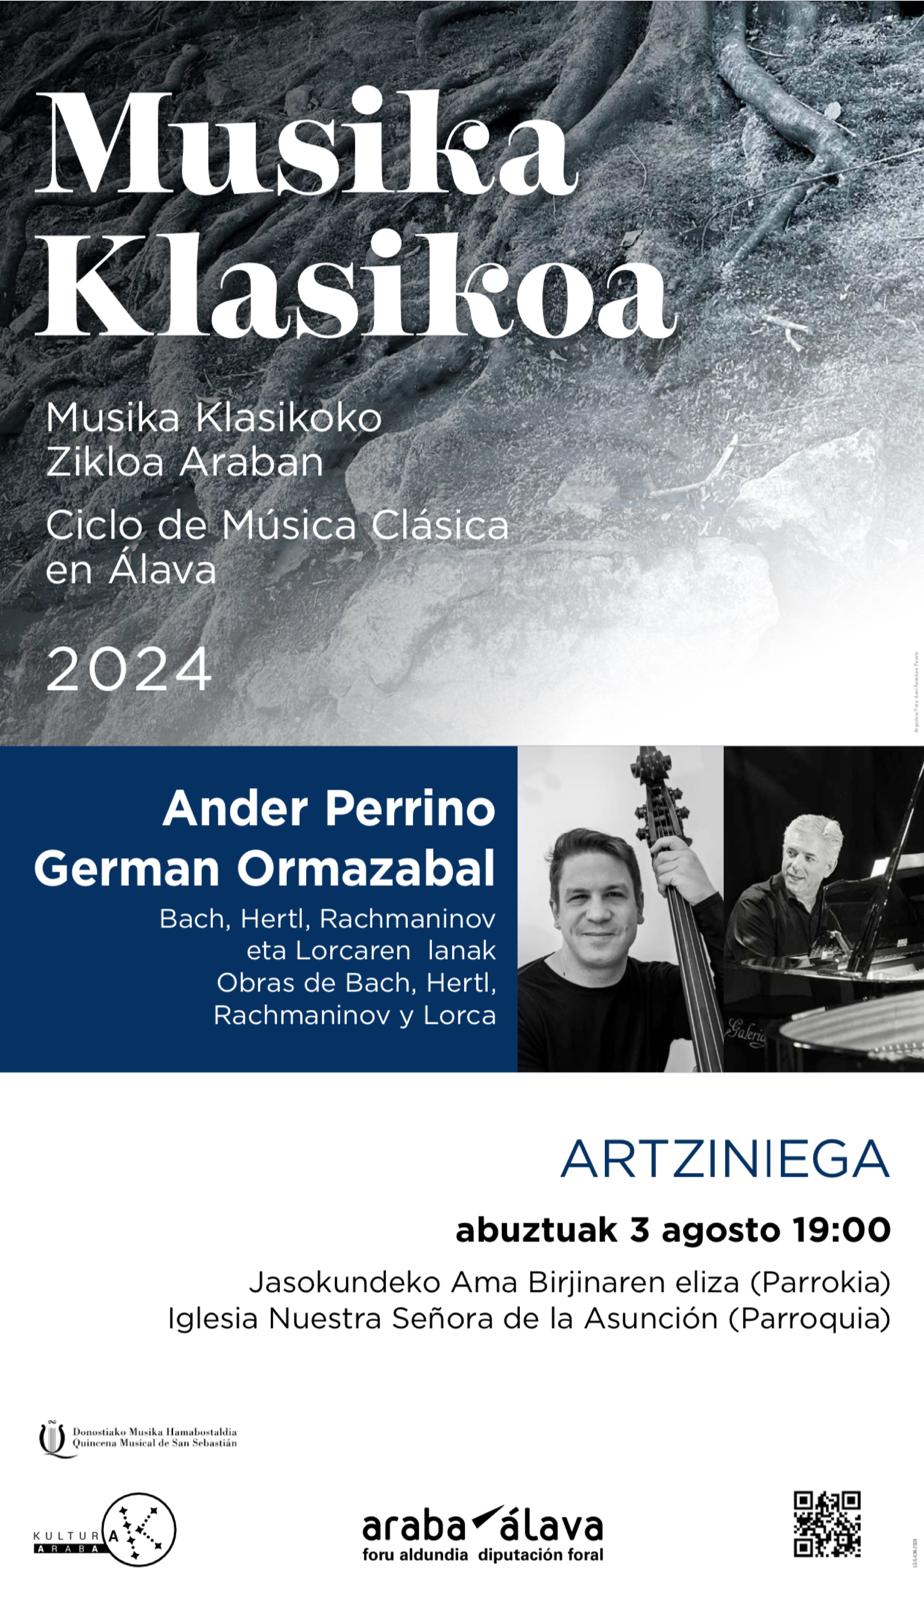 El programa de la Quincena Musical de Donostia vuelve a visitar un año más Artziniega. 